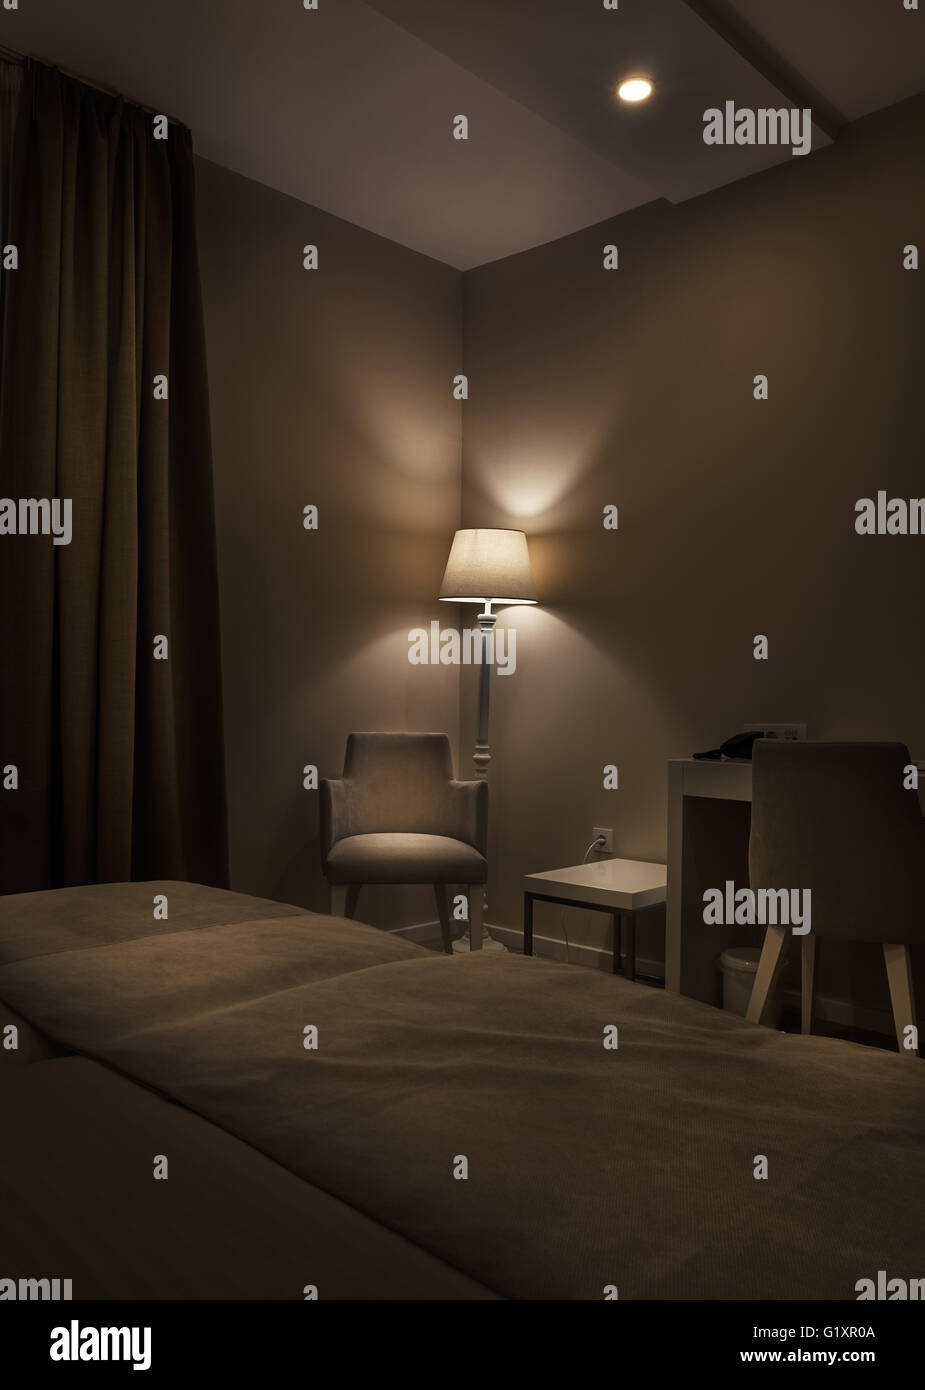 Dettagli di una camera di albergo, lampada retrò e poltrona, grande marrone scuro tende, ambiente tranquillo durante la notte. Foto Stock